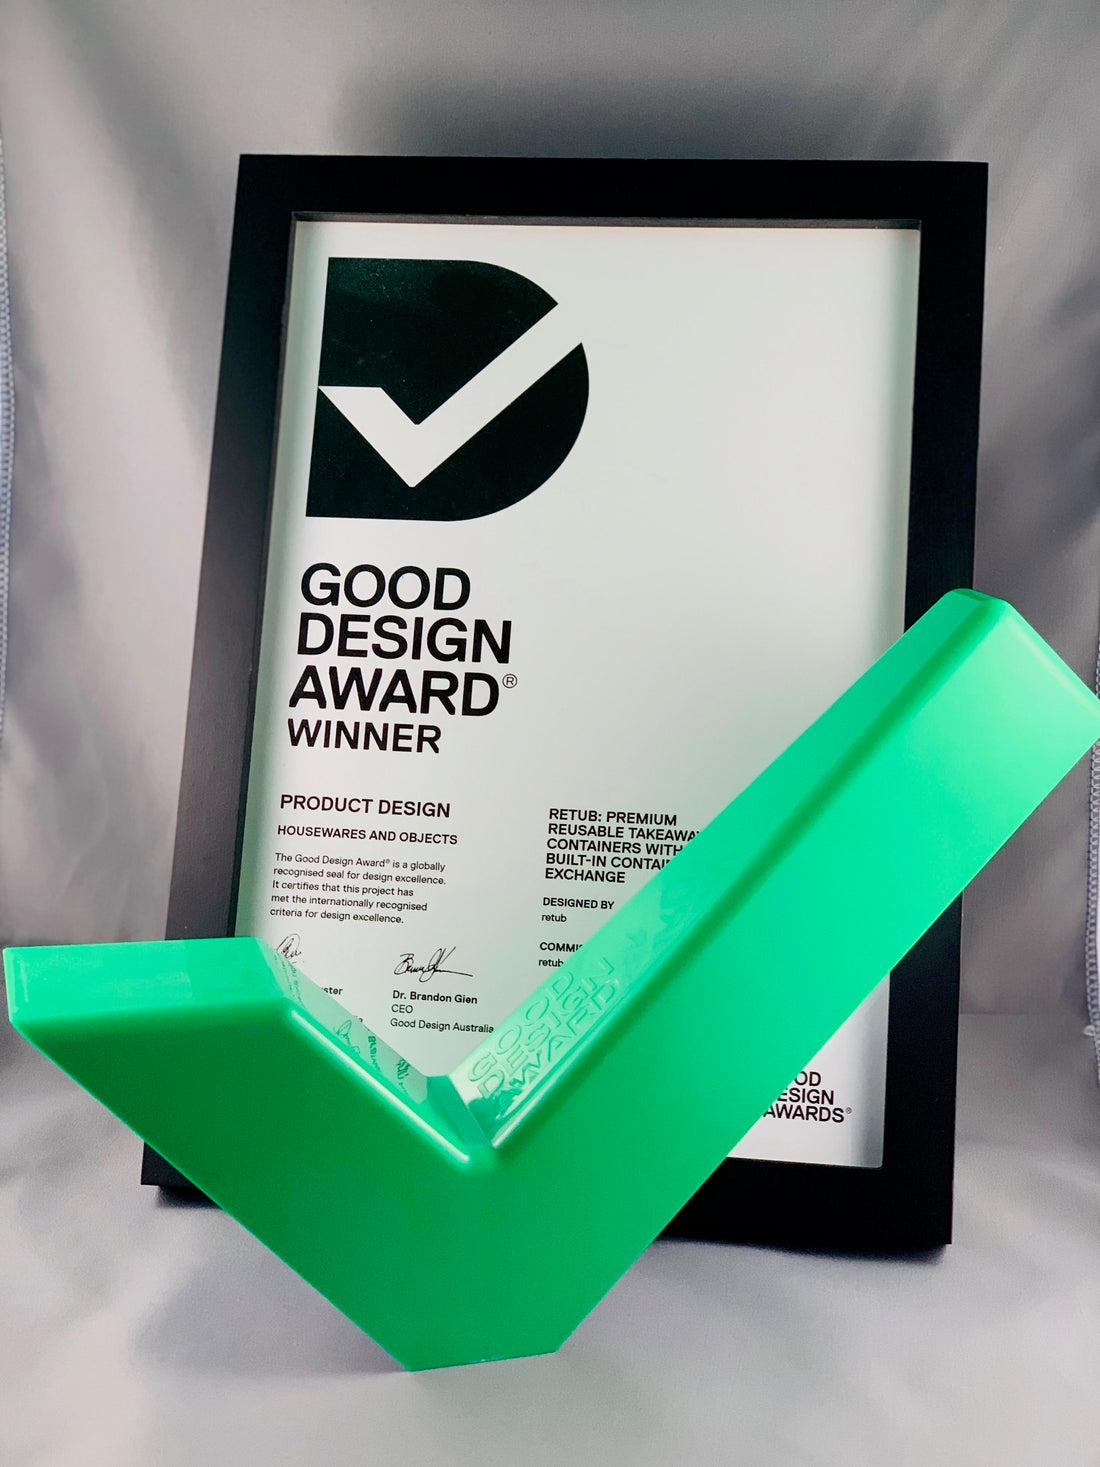 Australia's Good Design Winner Award